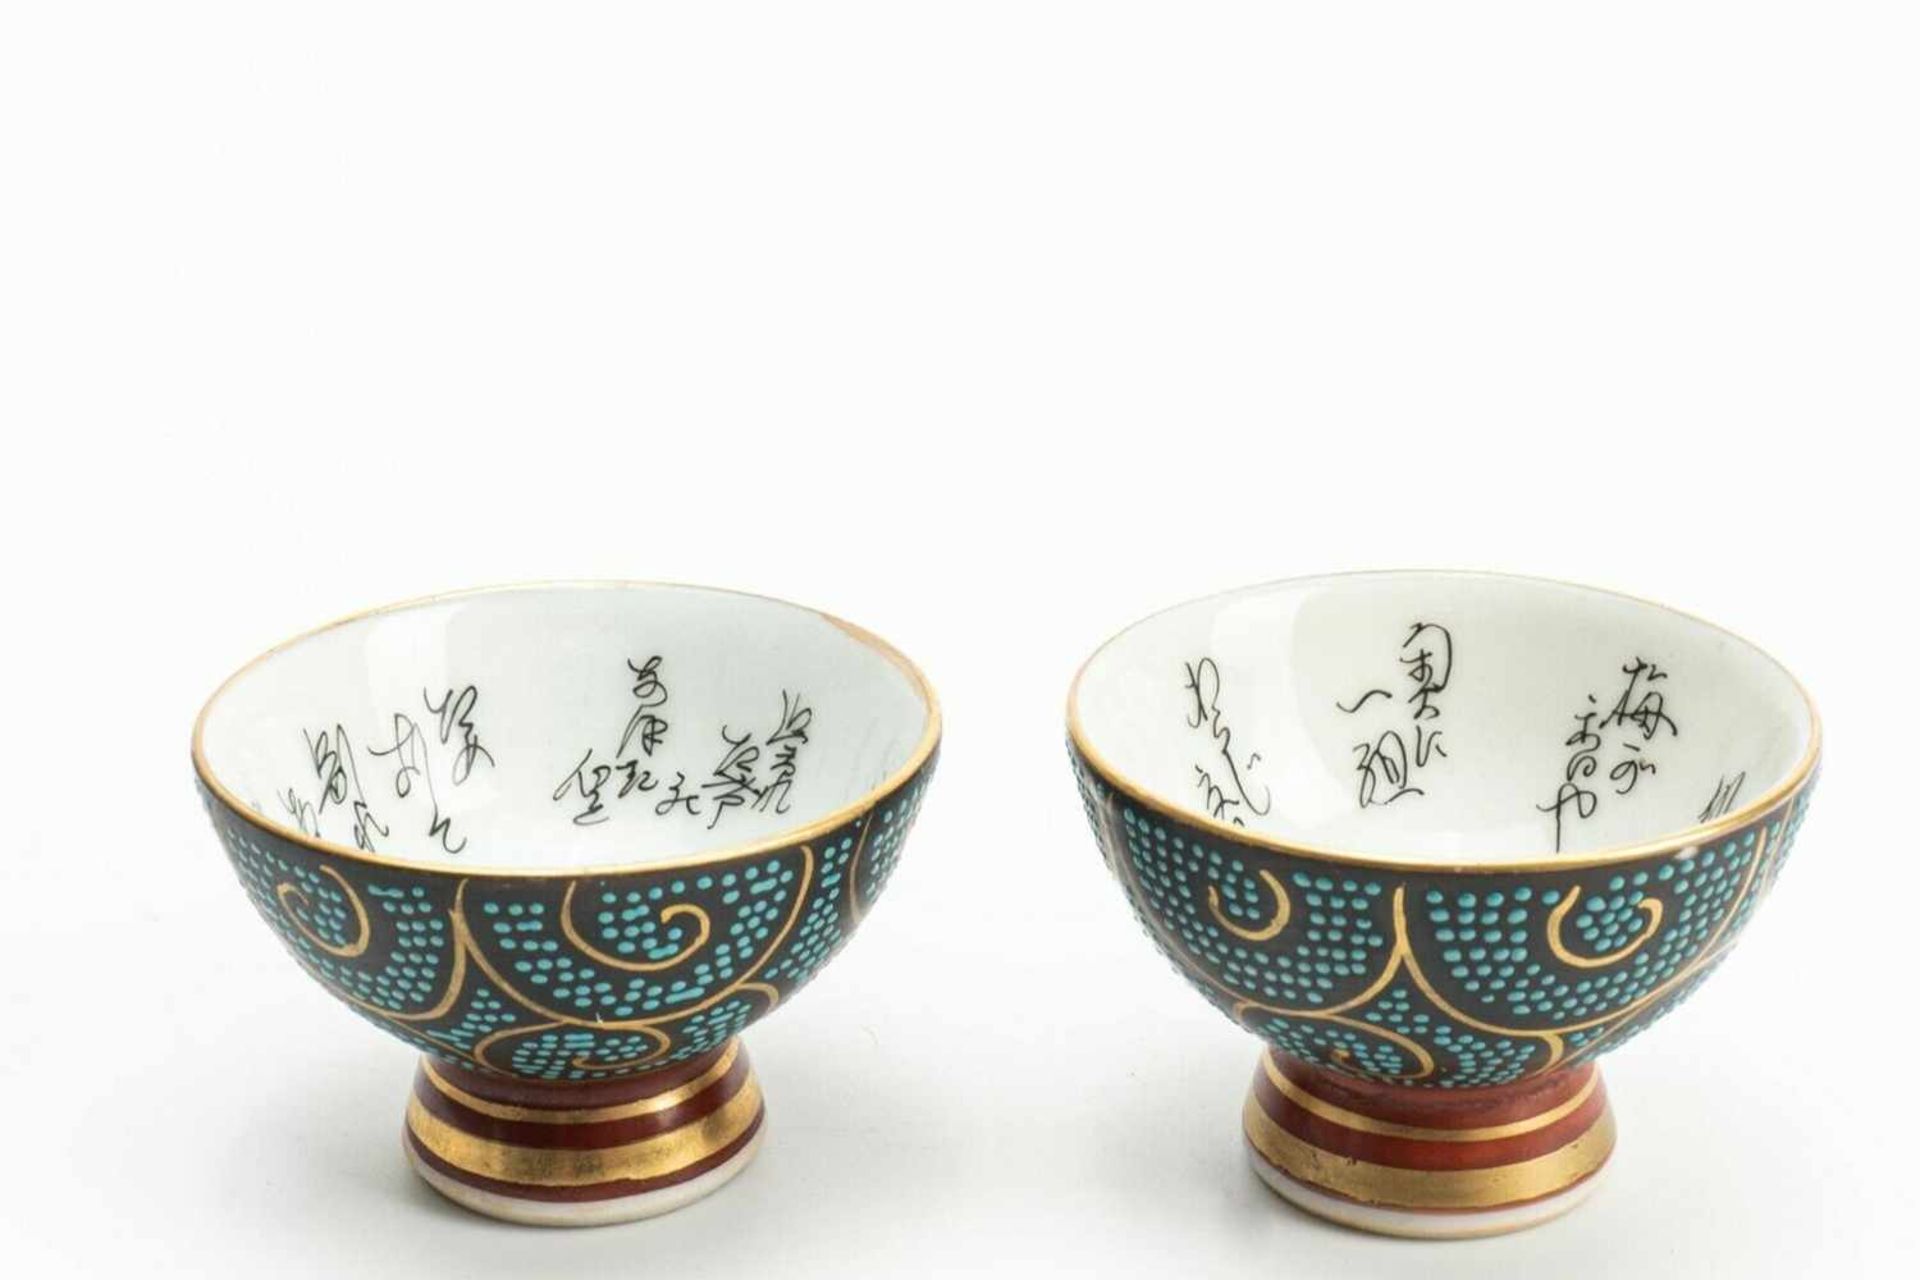 Pair of small (tea) bowls